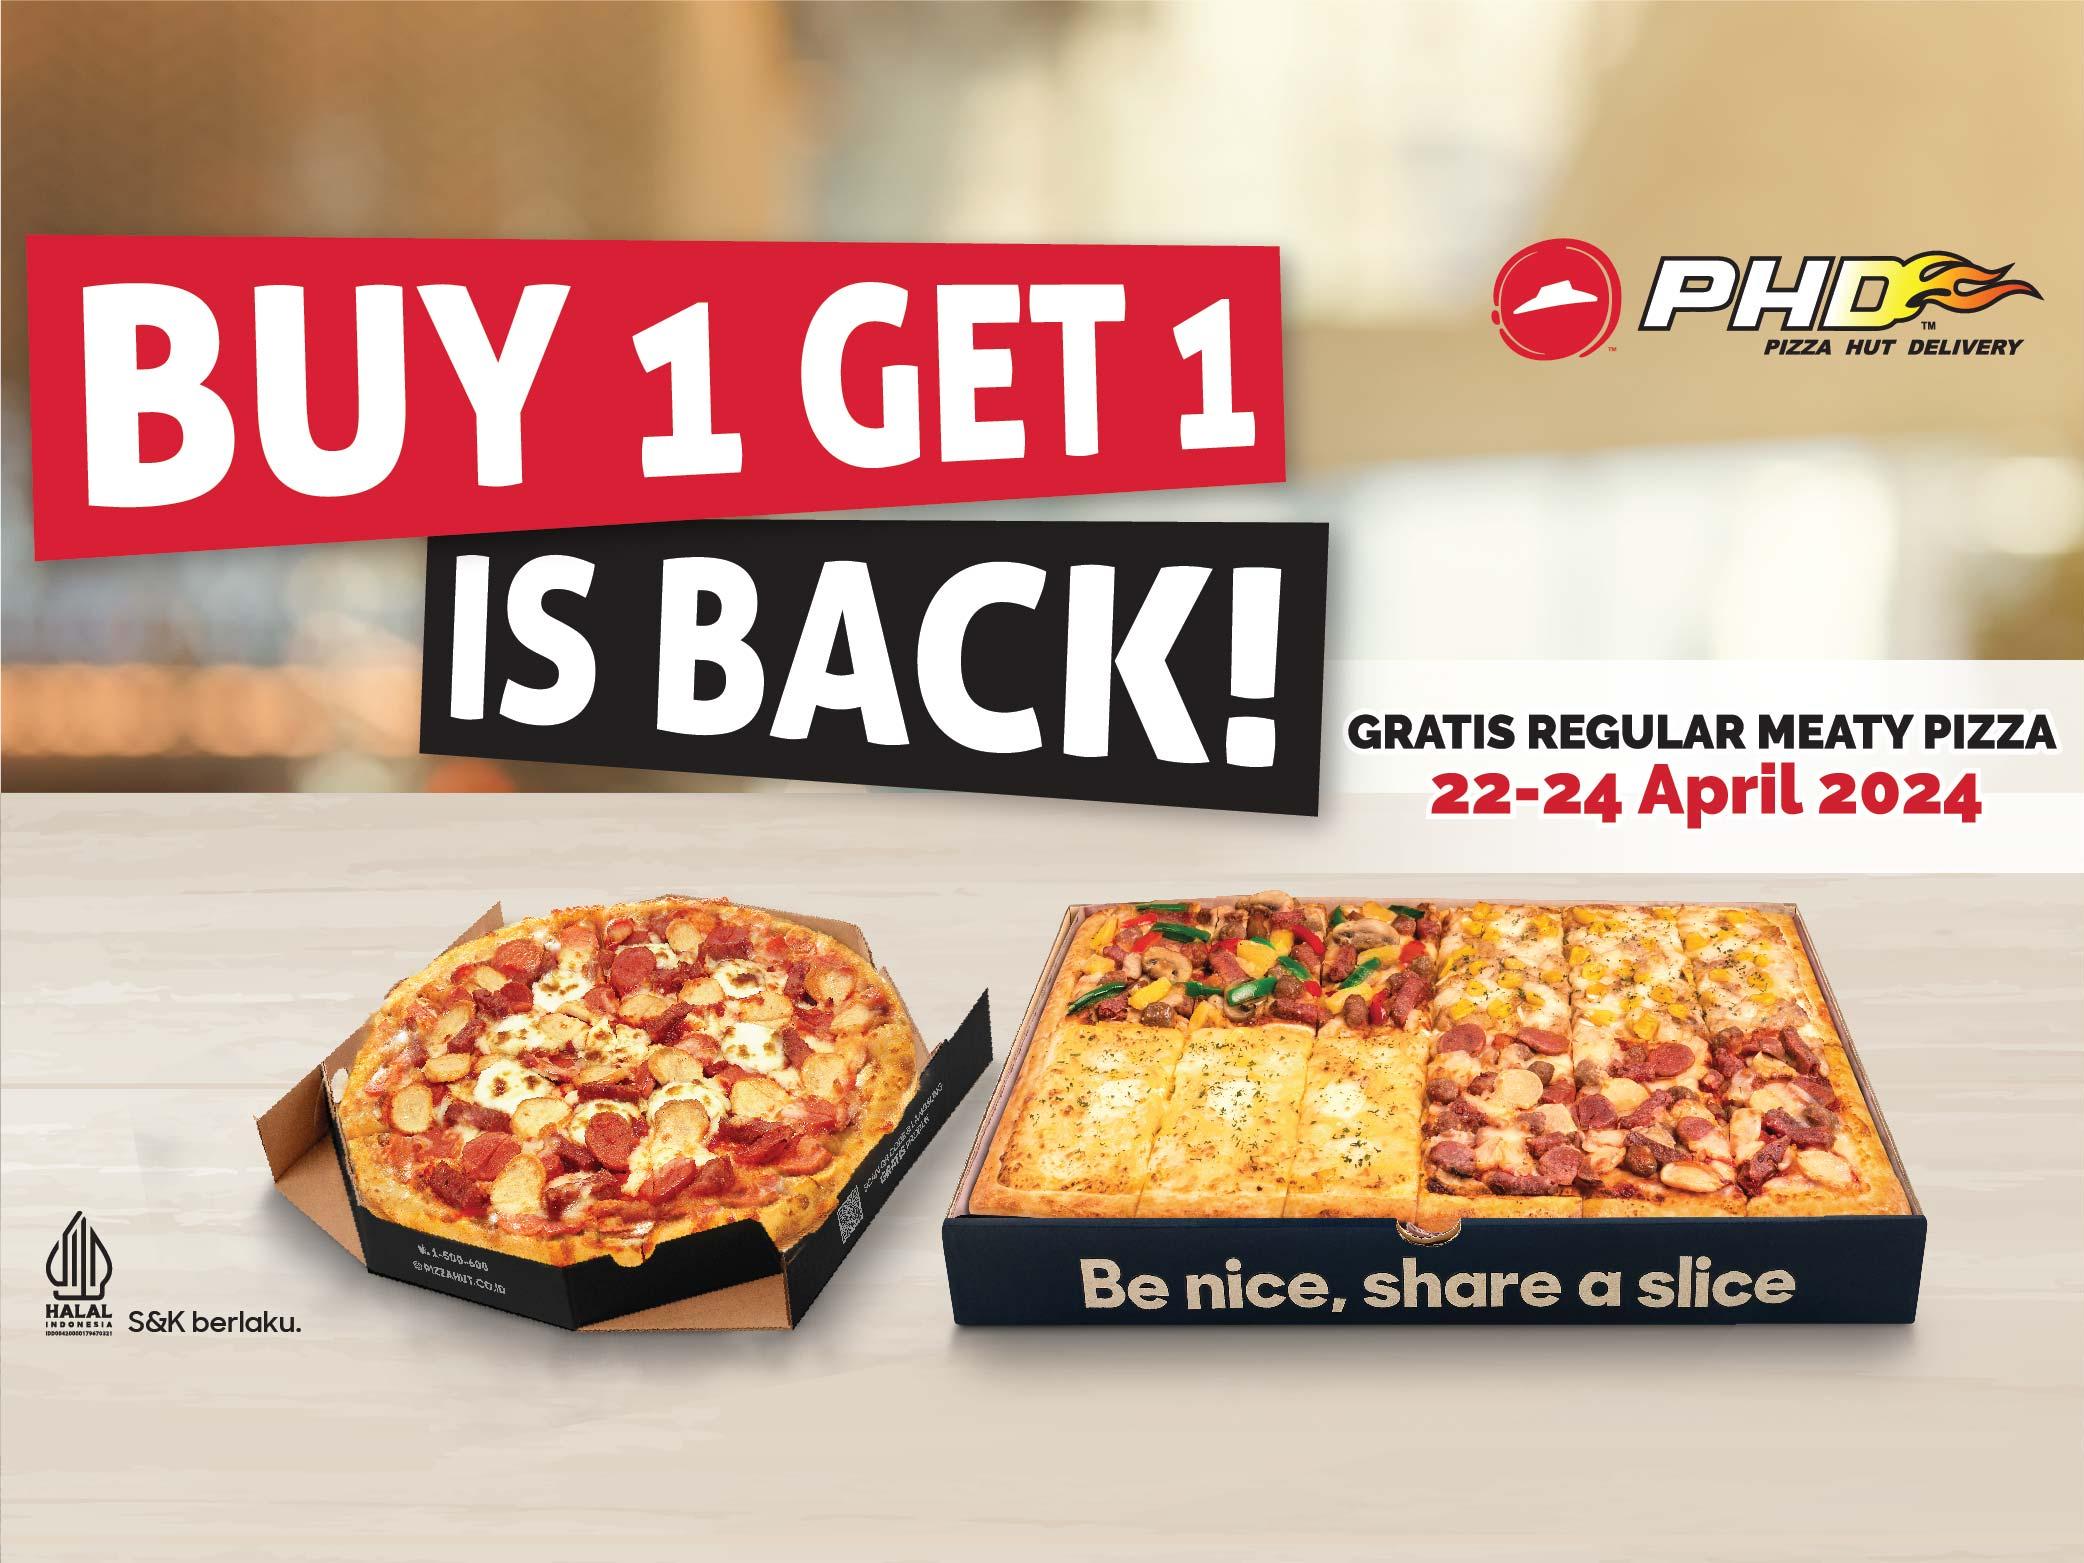 Pizza Hut Delivery - PHD, Harapan Raya Pekanbaru